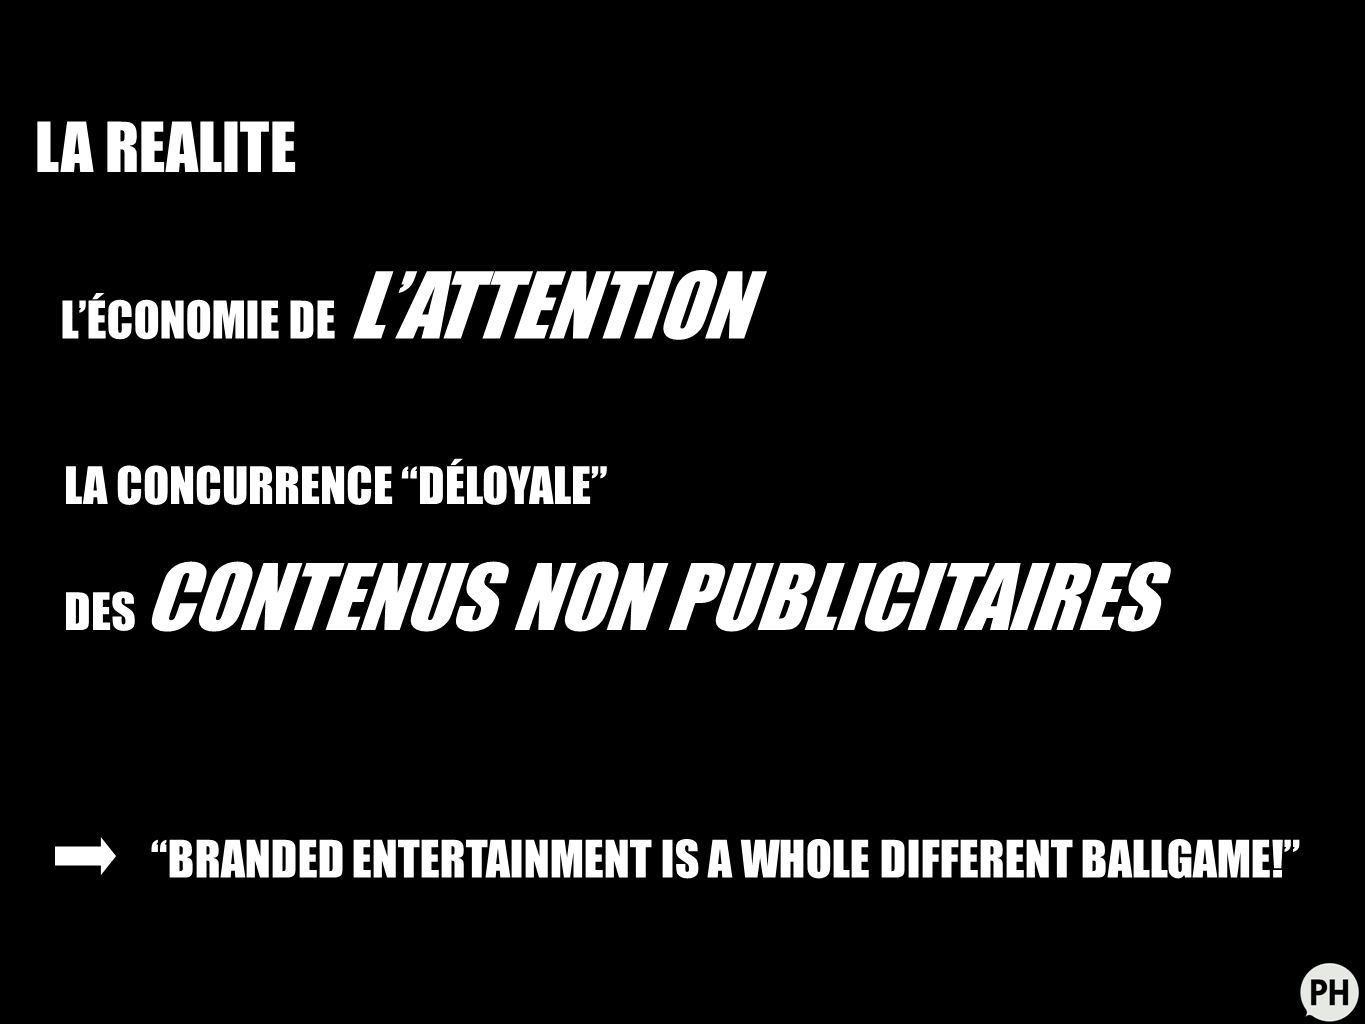 LÉCONOMIE DE LATTENTION LA CONCURRENCE DÉLOYALE DES CONTENUS NON PUBLICITAIRES BRANDED ENTERTAINMENT IS A WHOLE DIFFERENT BALLGAME.